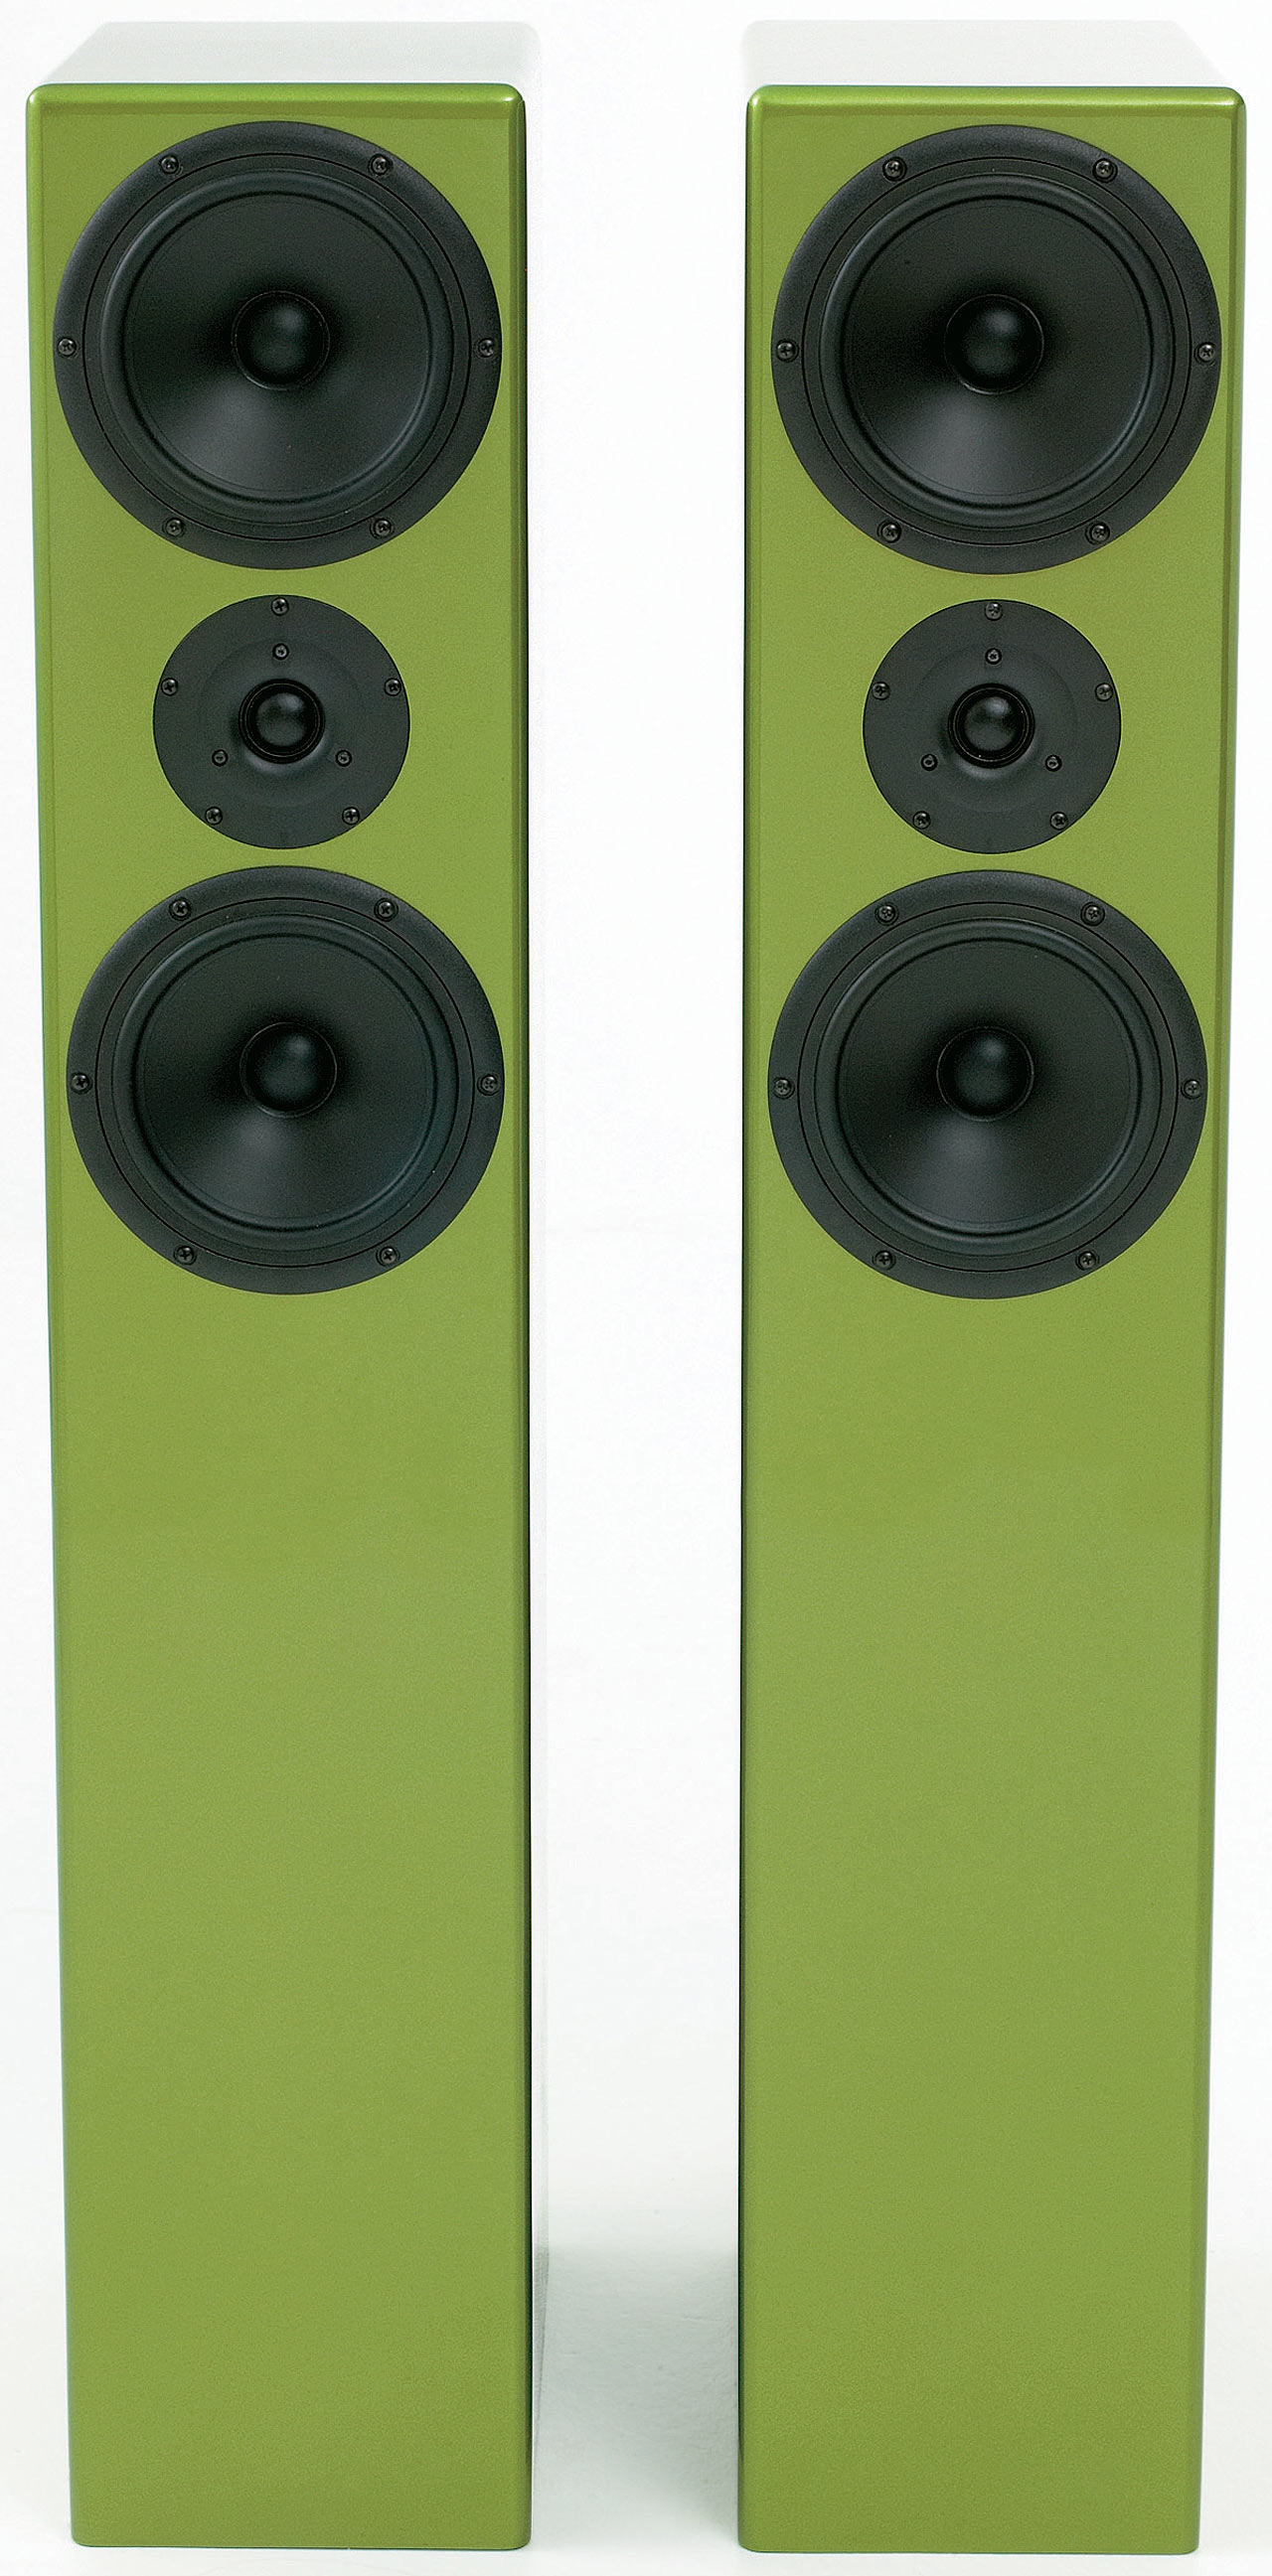 Review The Loudspeaker Kit F6 Mark Ii Speaker Kit